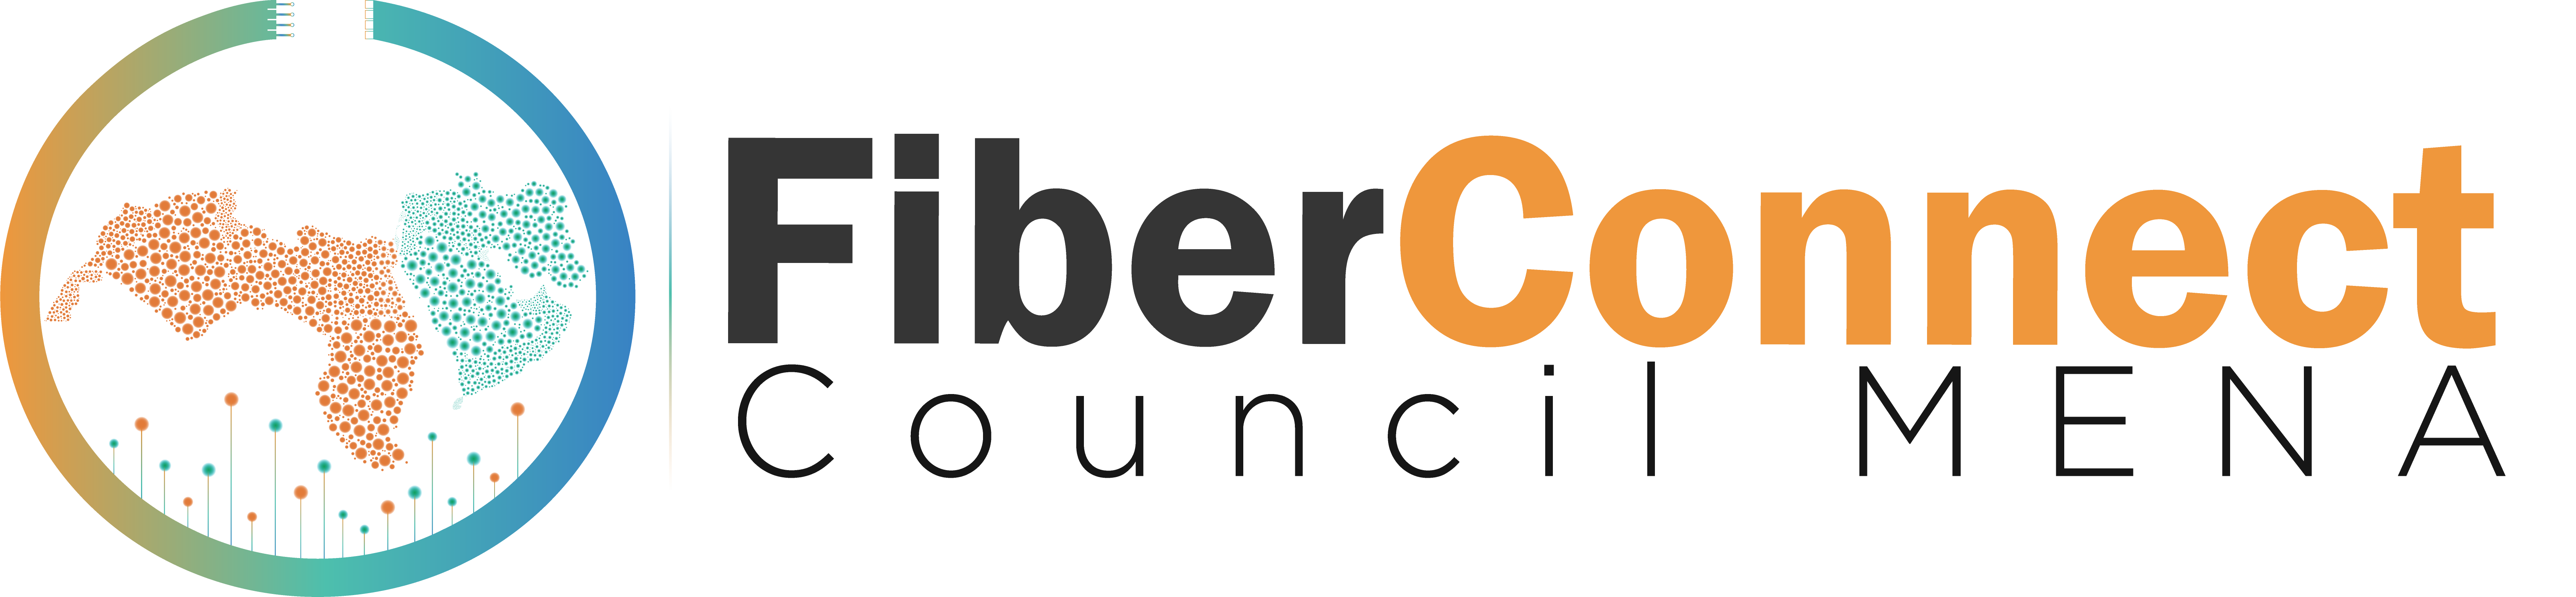 FiberConnect Council MENA